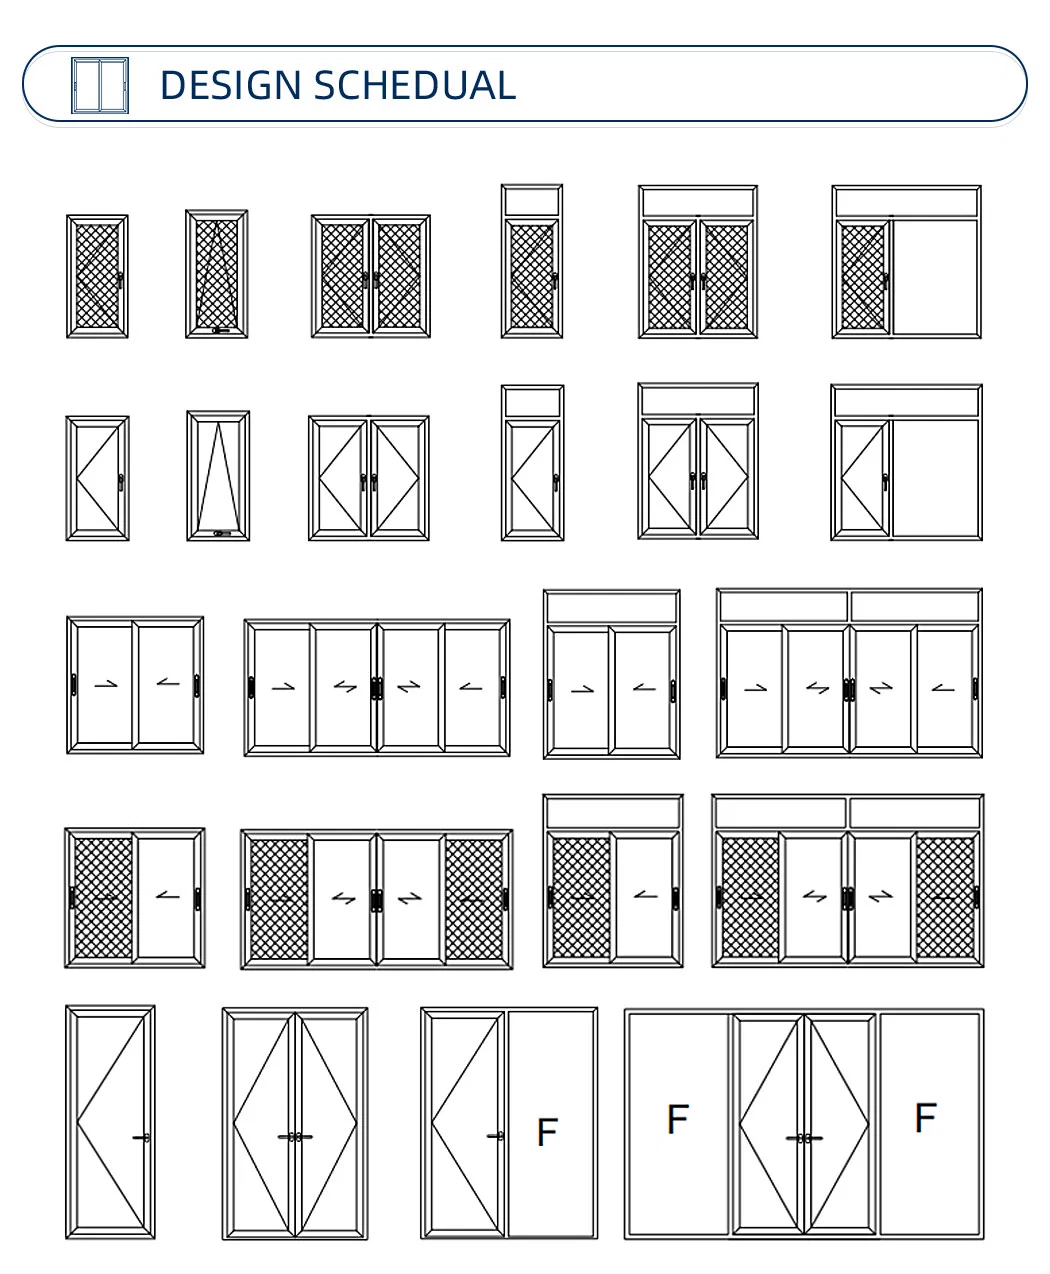 Australian Standard Bifold Window and Door with As2208|Aluminum Bifold Doors|Bifold Sliding Doors|Bifold Glass Patio Doors|Sliding Bifold Doors|Foldable Door